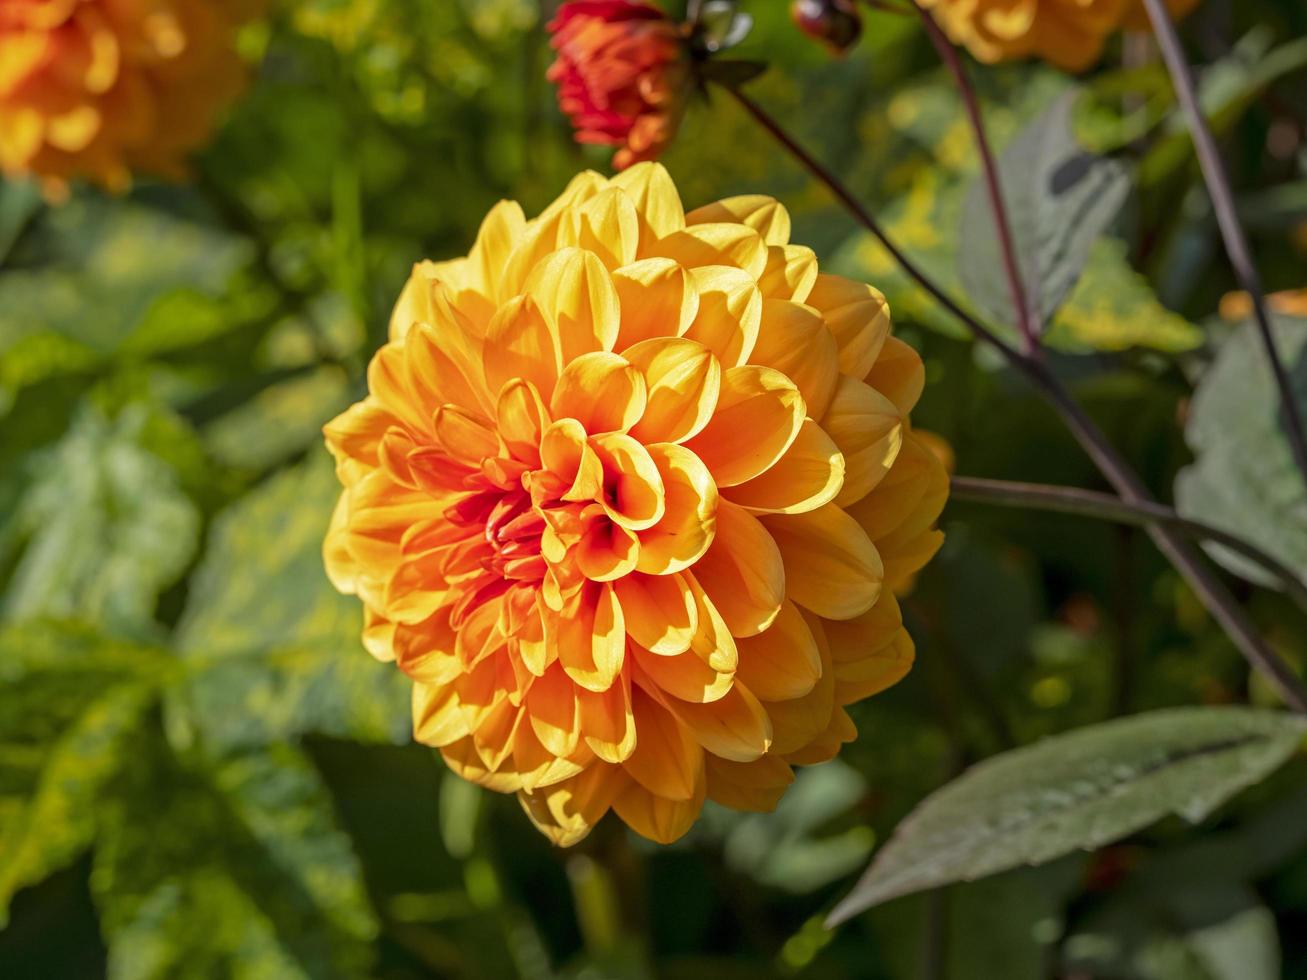 bellissimo fiore arancione doppio dalia in un giardino foto